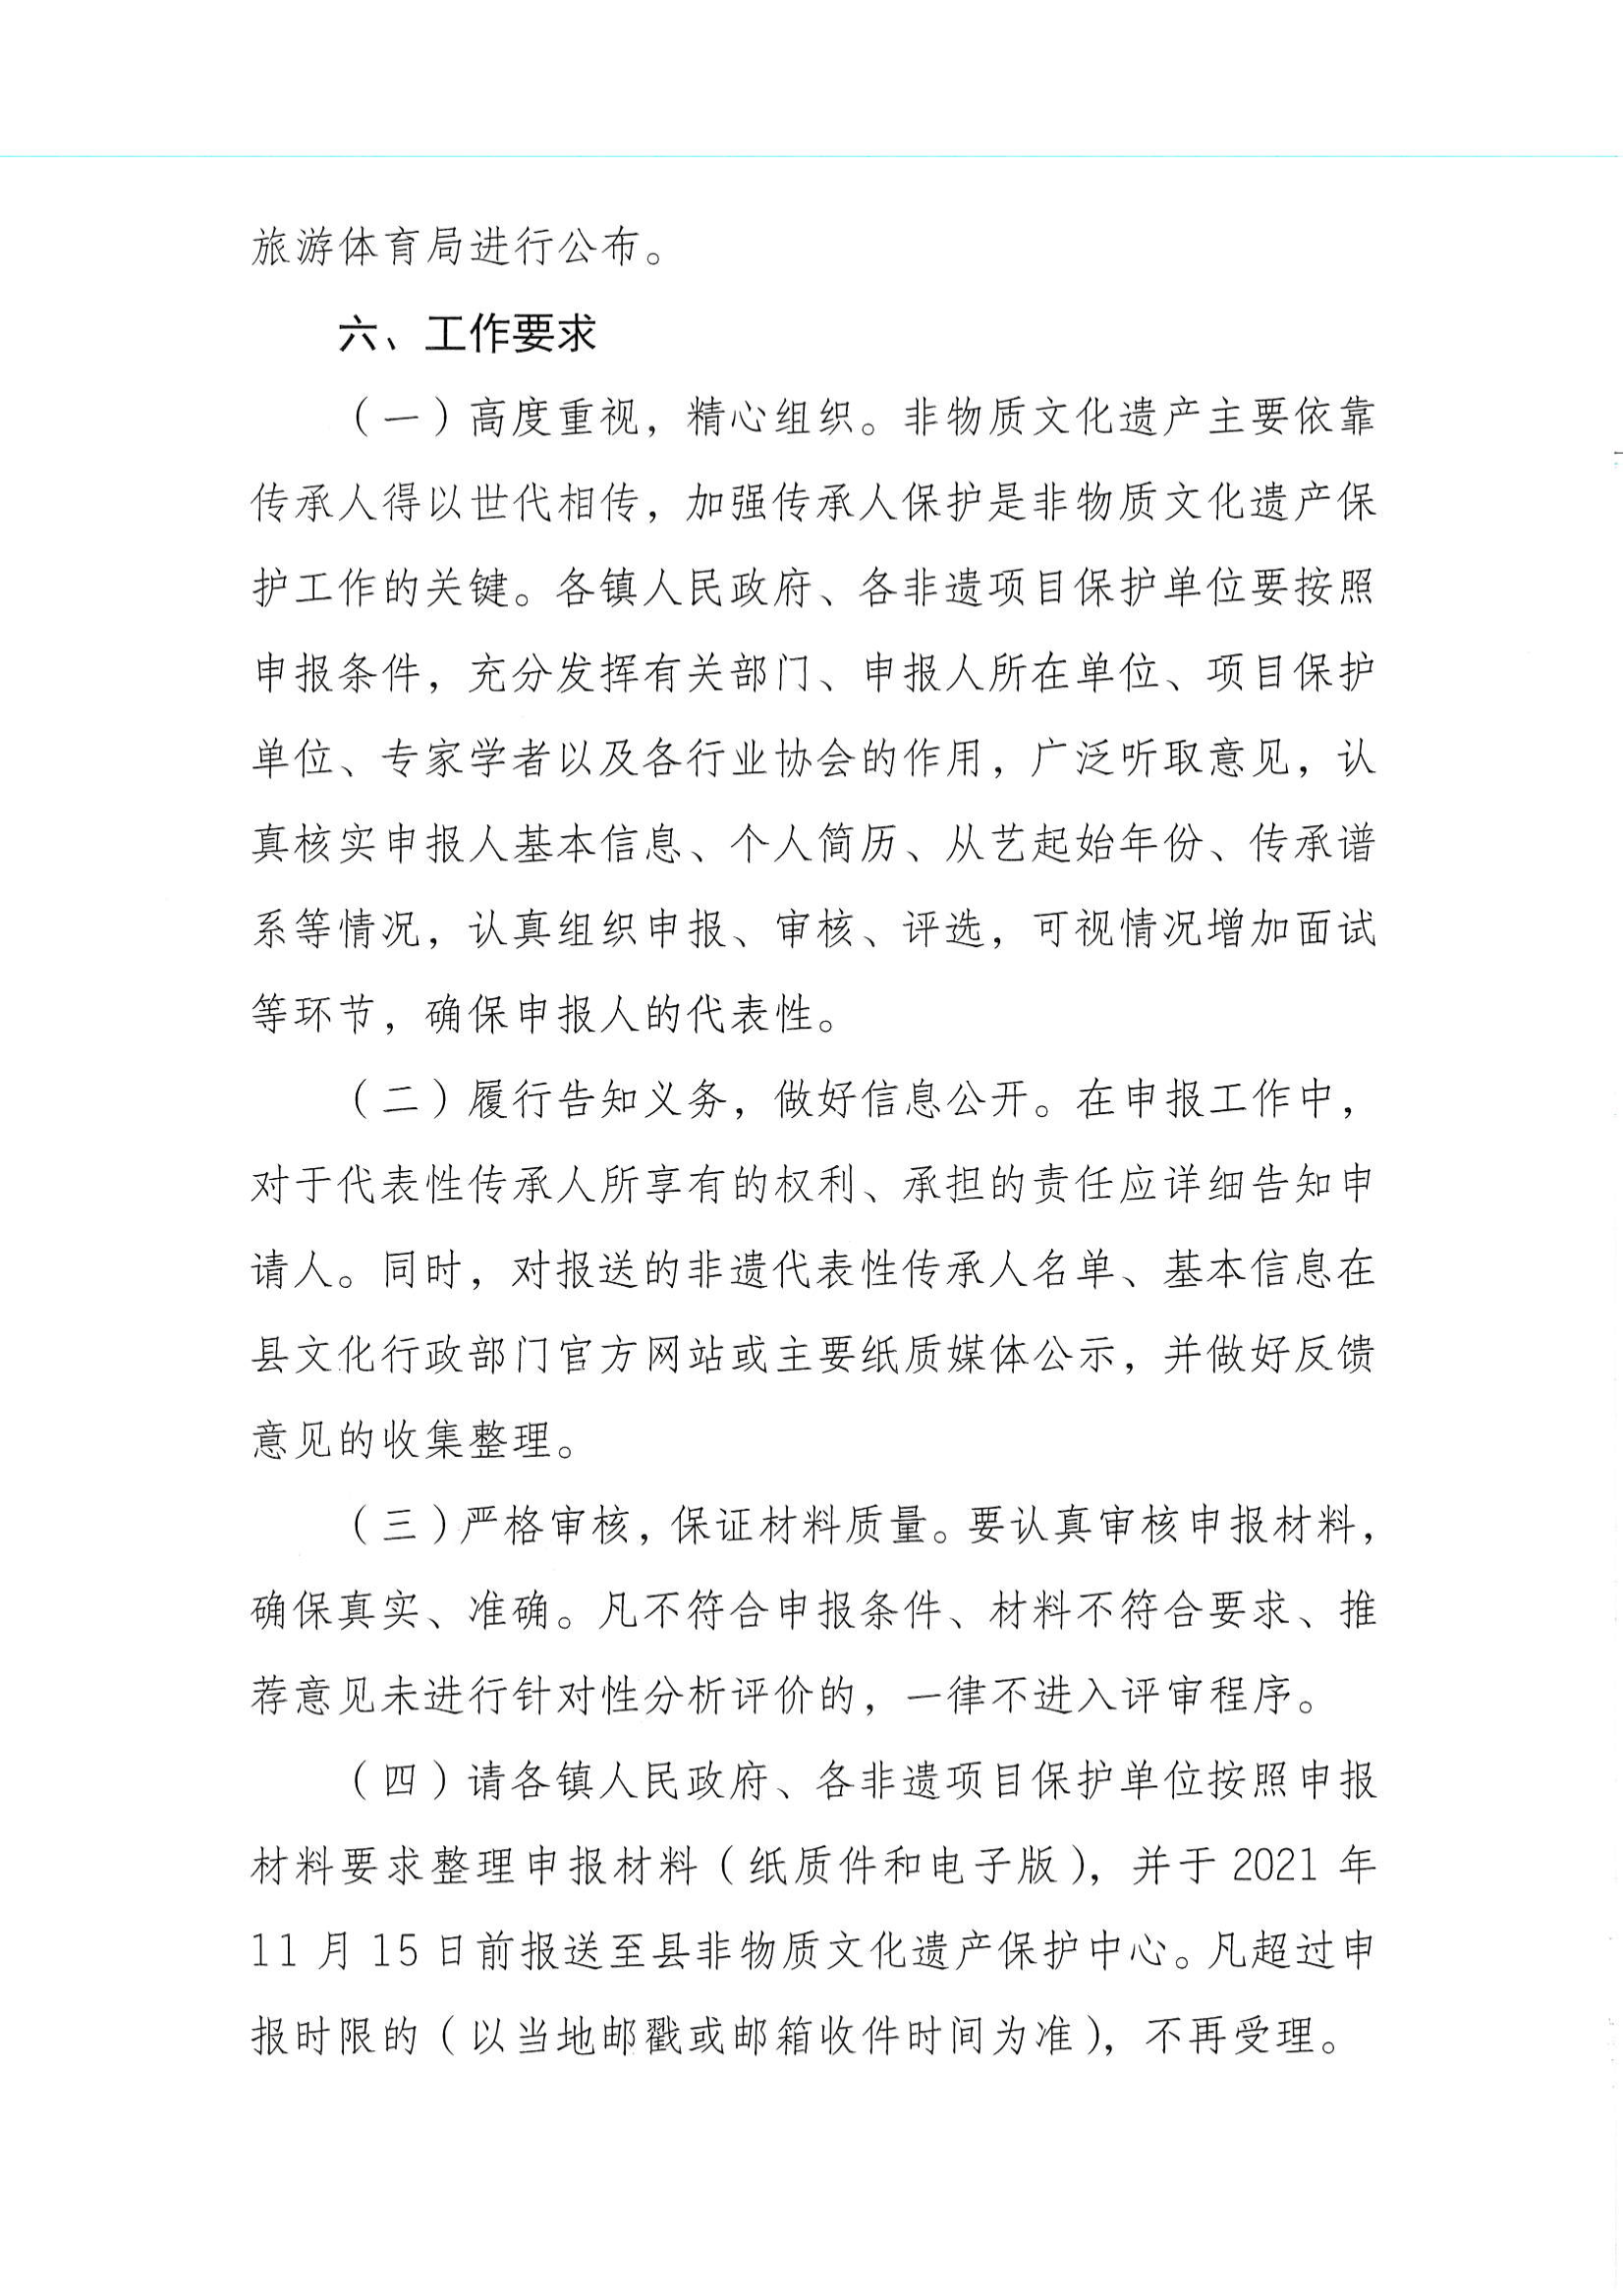 华文广旅体字〔2021〕23号  项目代表性传承人申报工作的通知_03.png